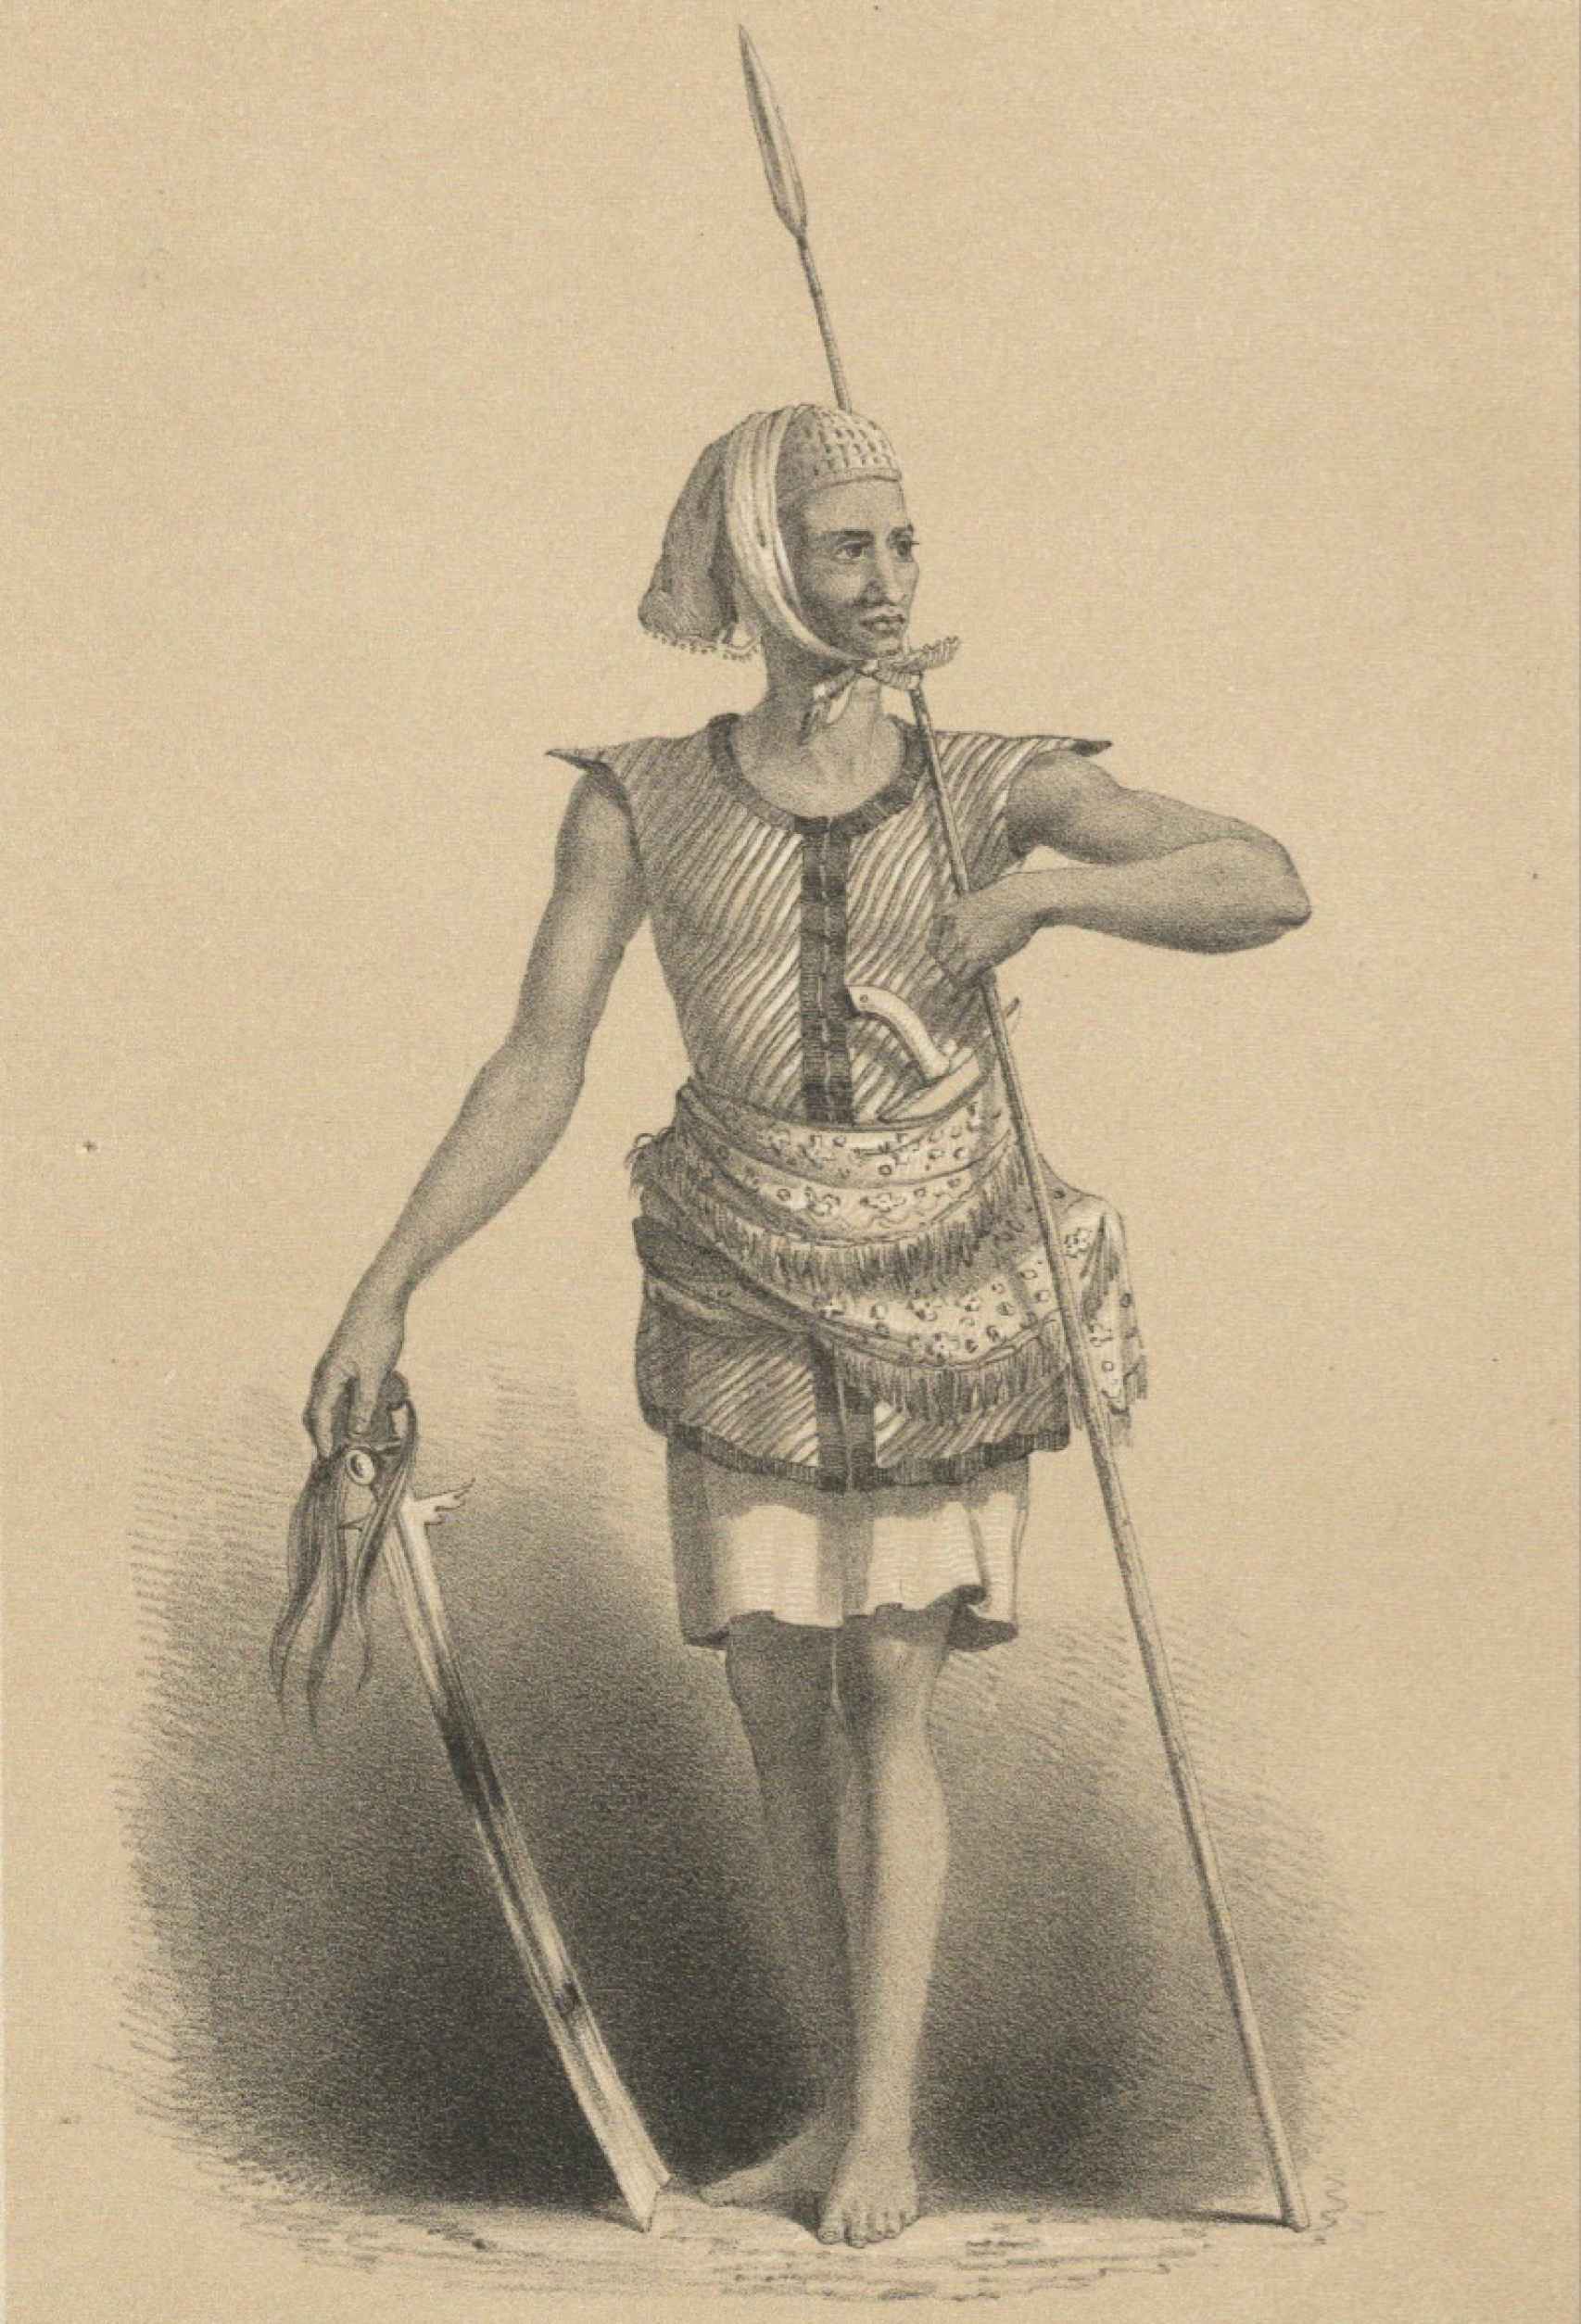 Pirata del mar de Joló armado con una espada kampeli, una lanza y un kris.